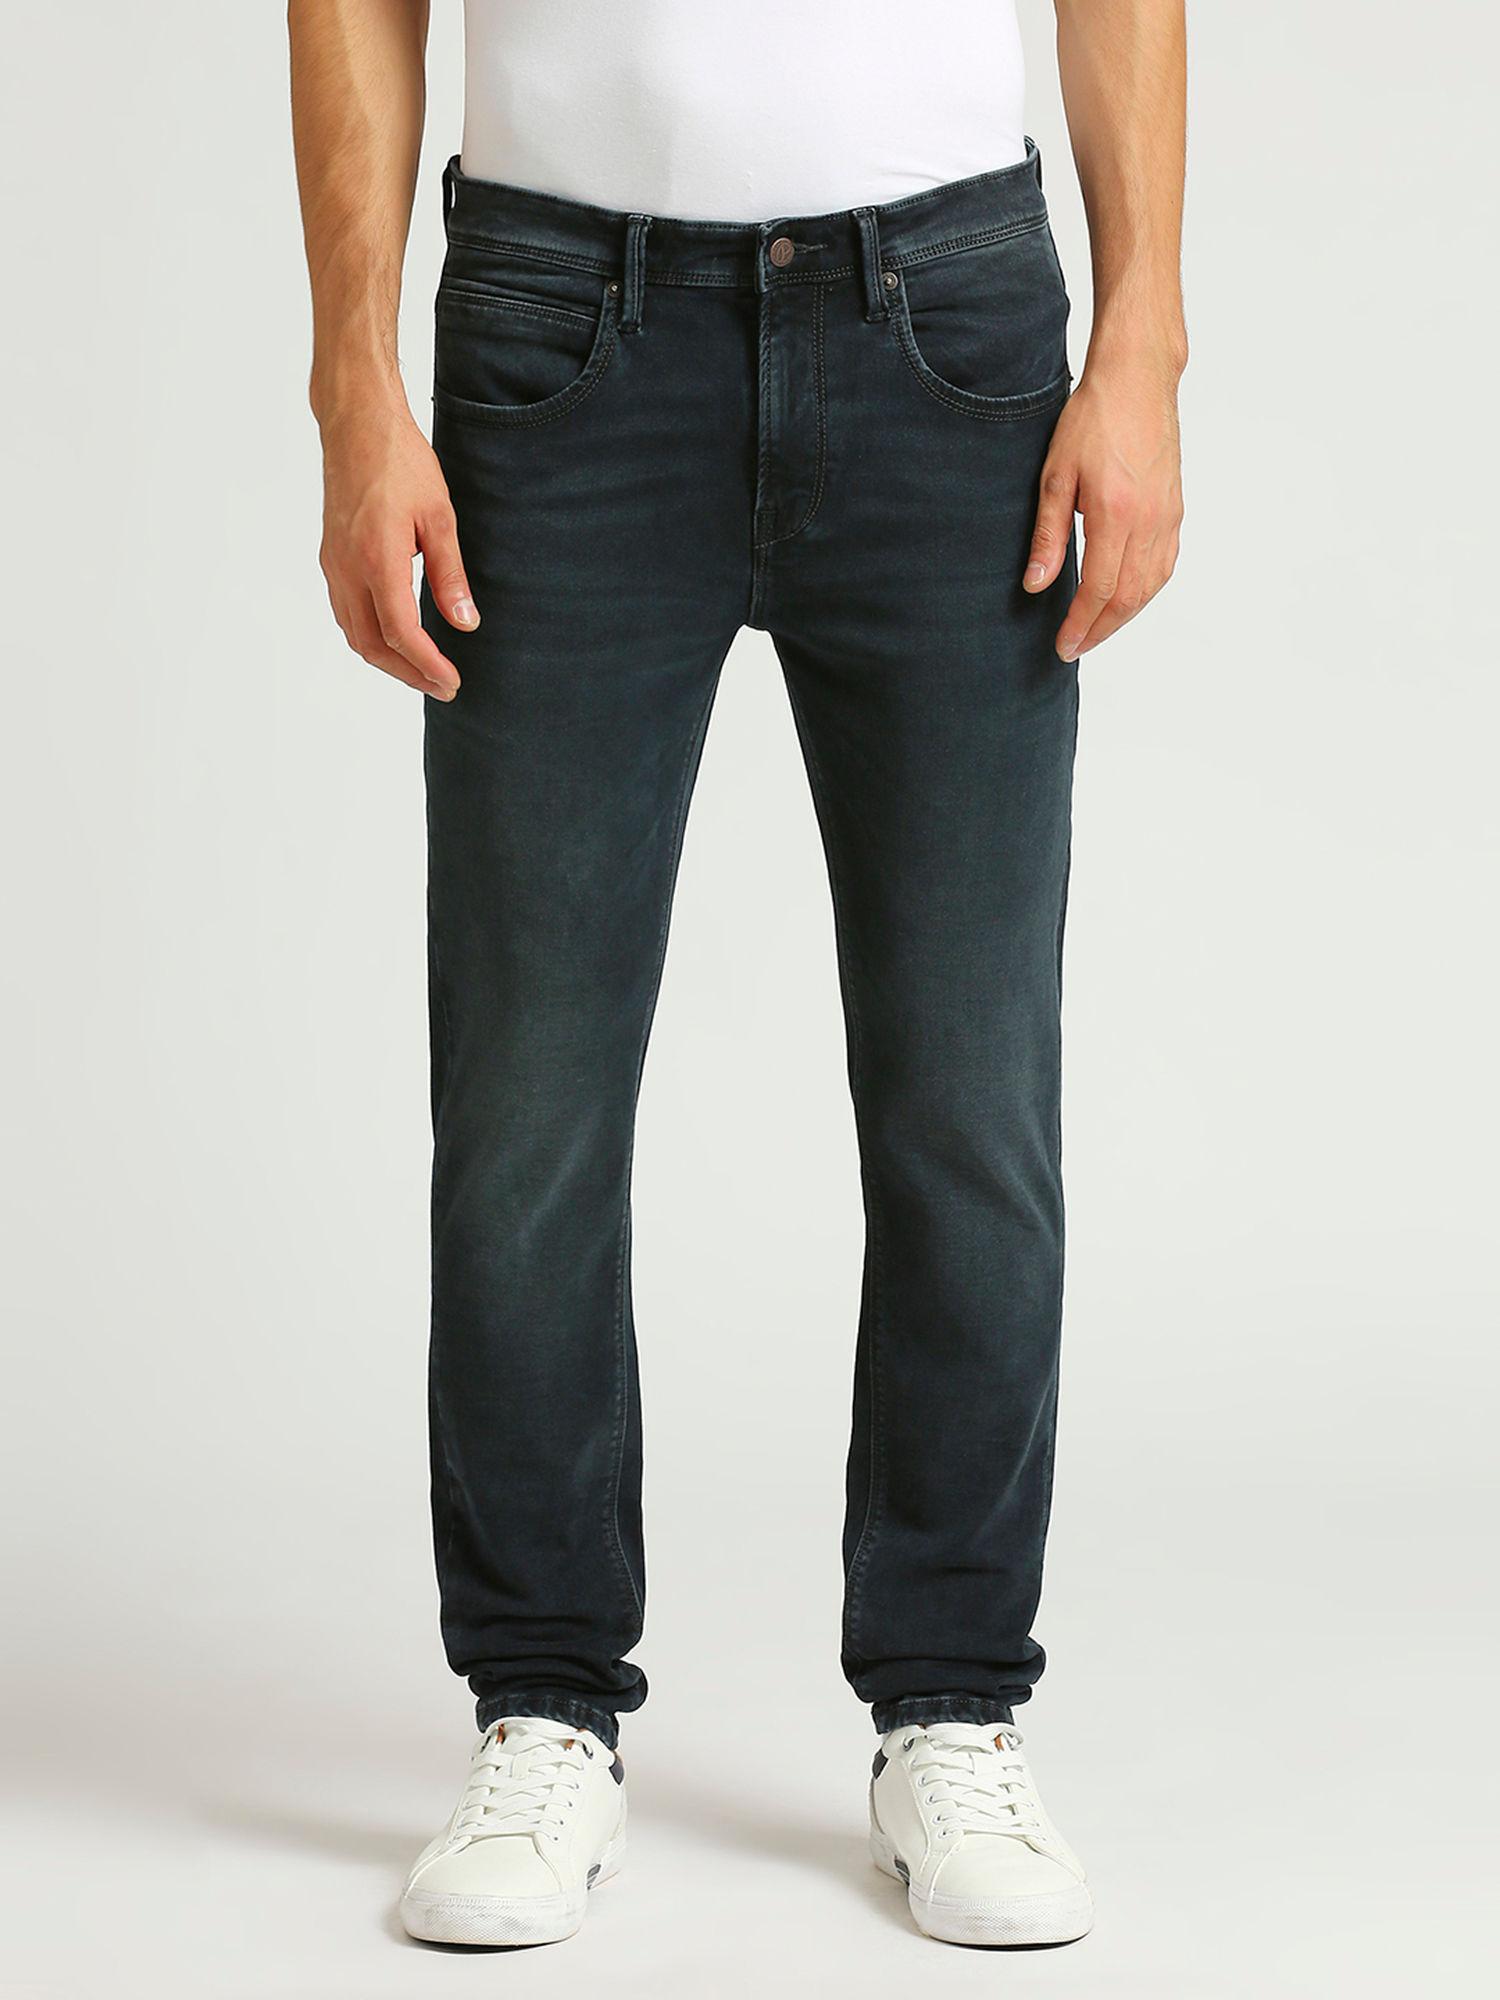 chinox-super-skinny-fit-mid-waist-jeans